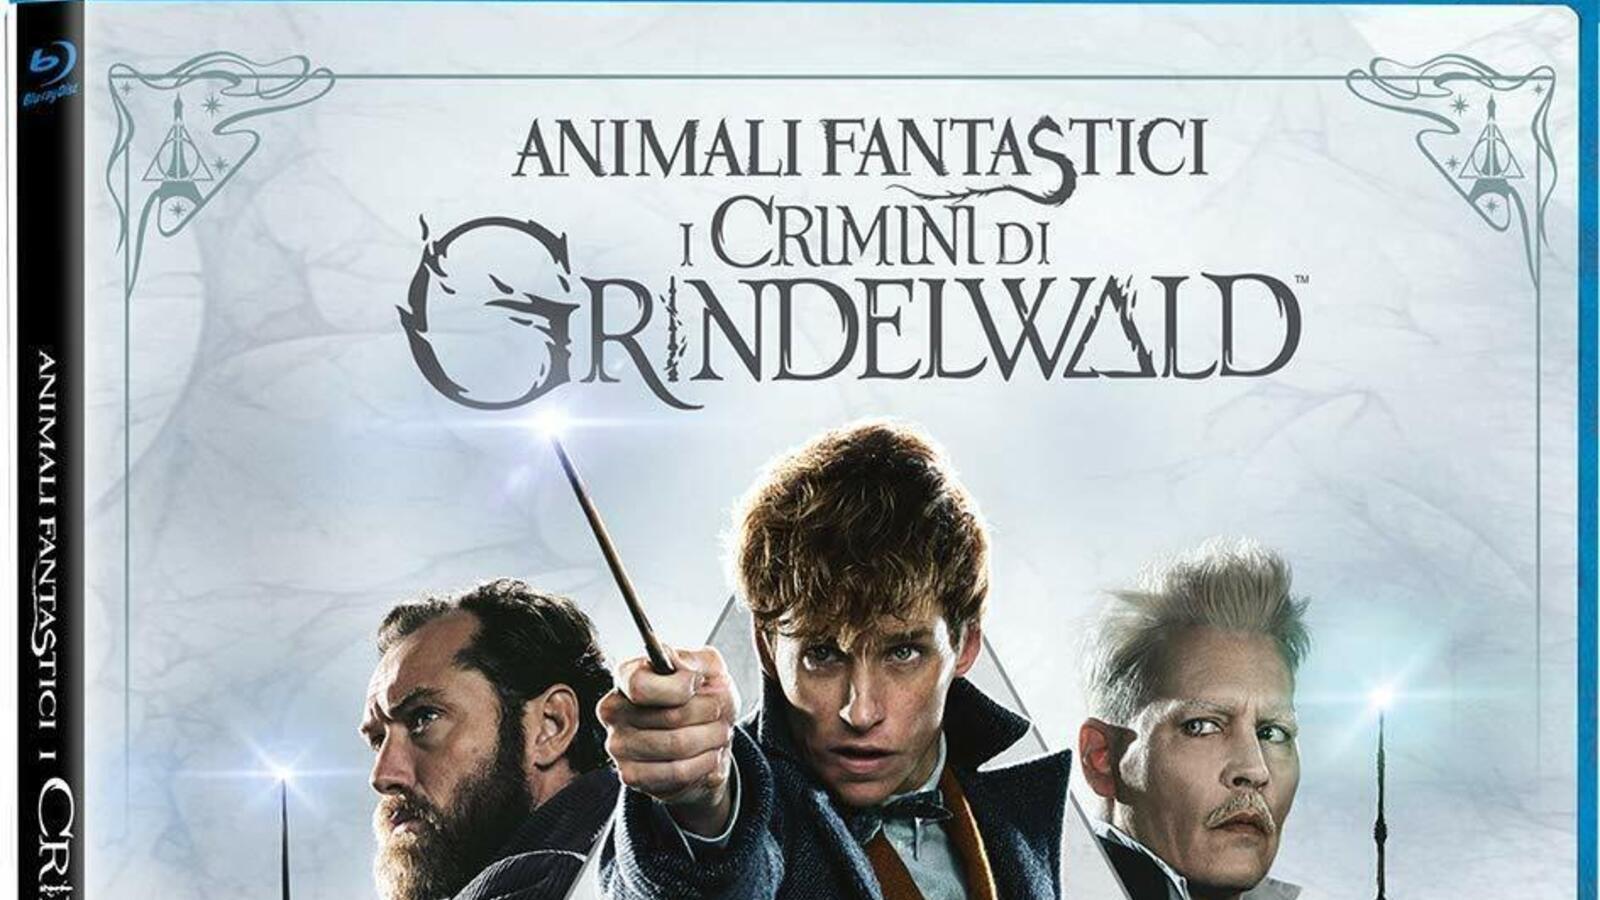 Animali Fantastici: I crimini di Grindelwald, il Blu-ray del film è su Amazon al prezzo più basso di sempre